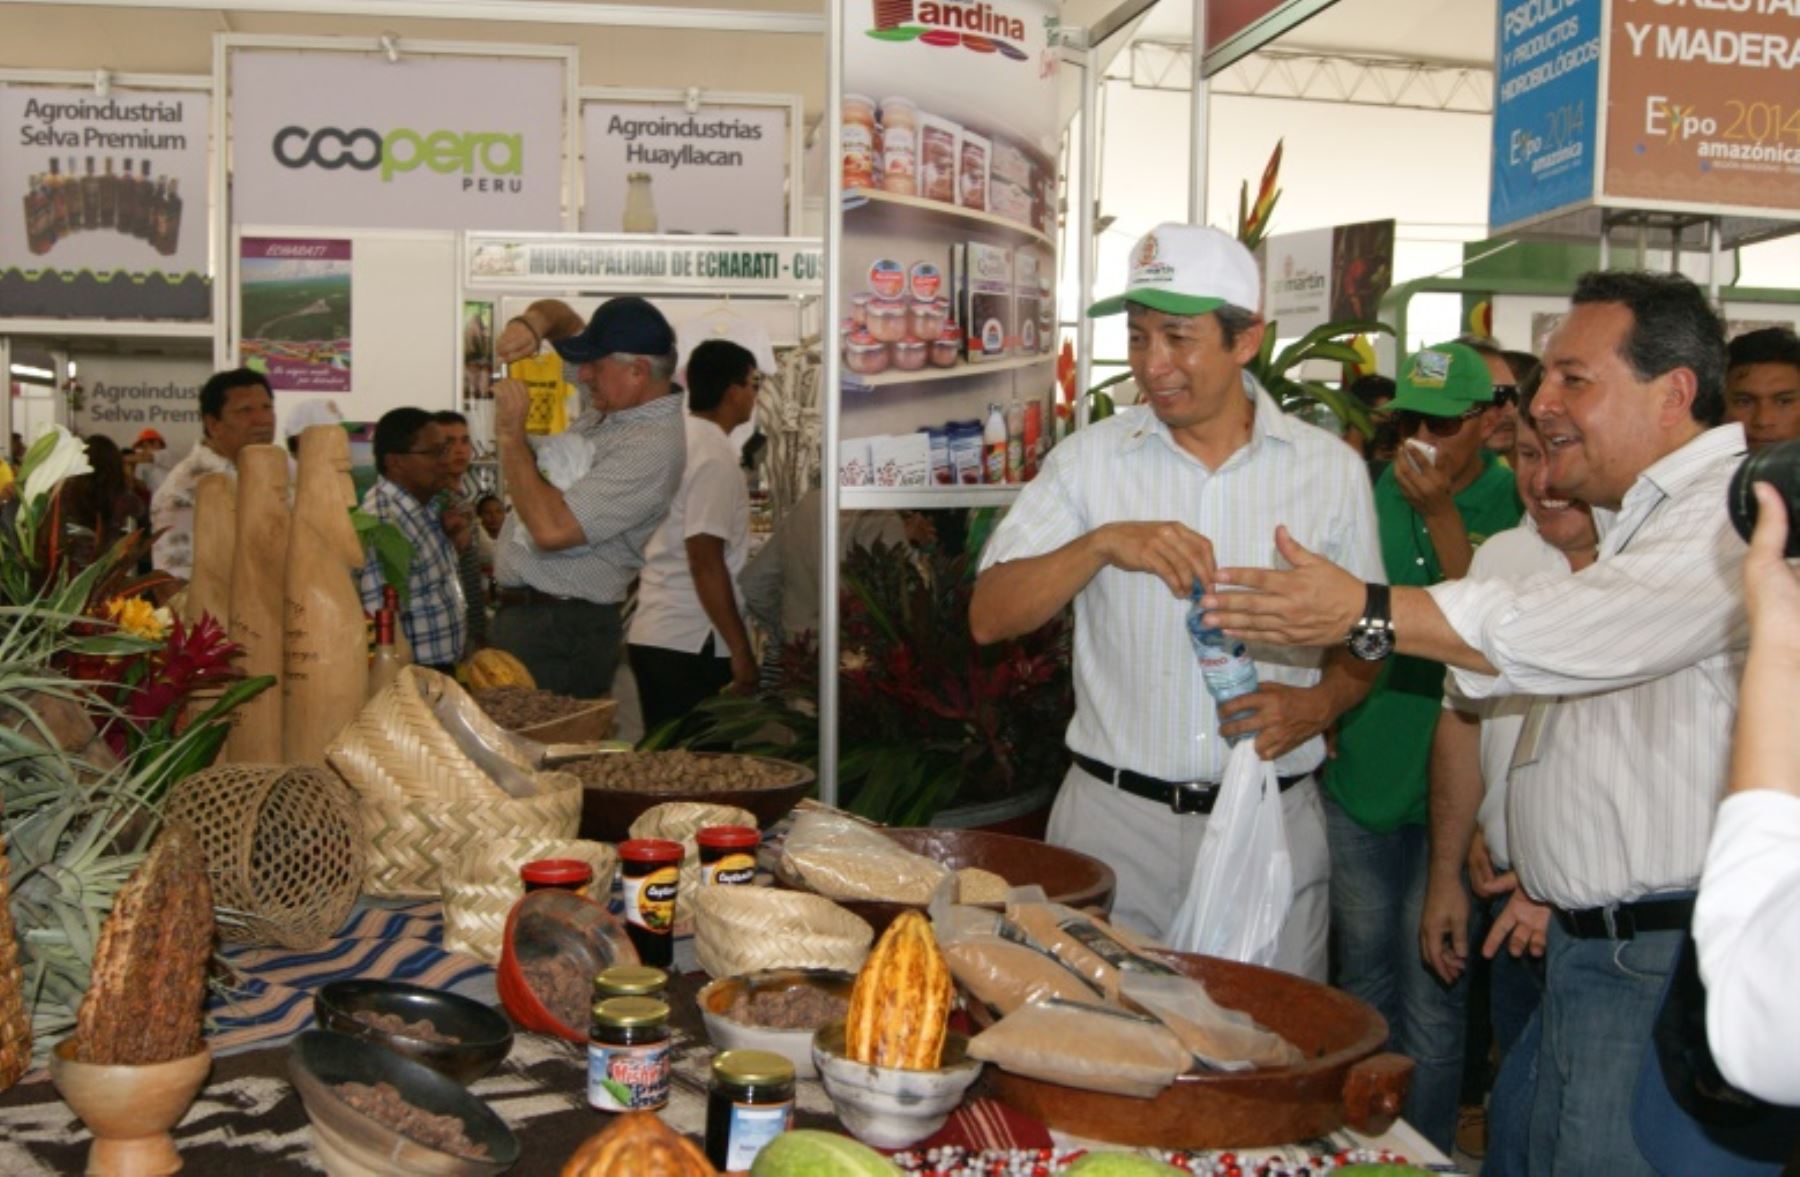 En un ambiente festivo se inauguró la Expo Amazónica 2014 en Bagua Grande, Amazonas.